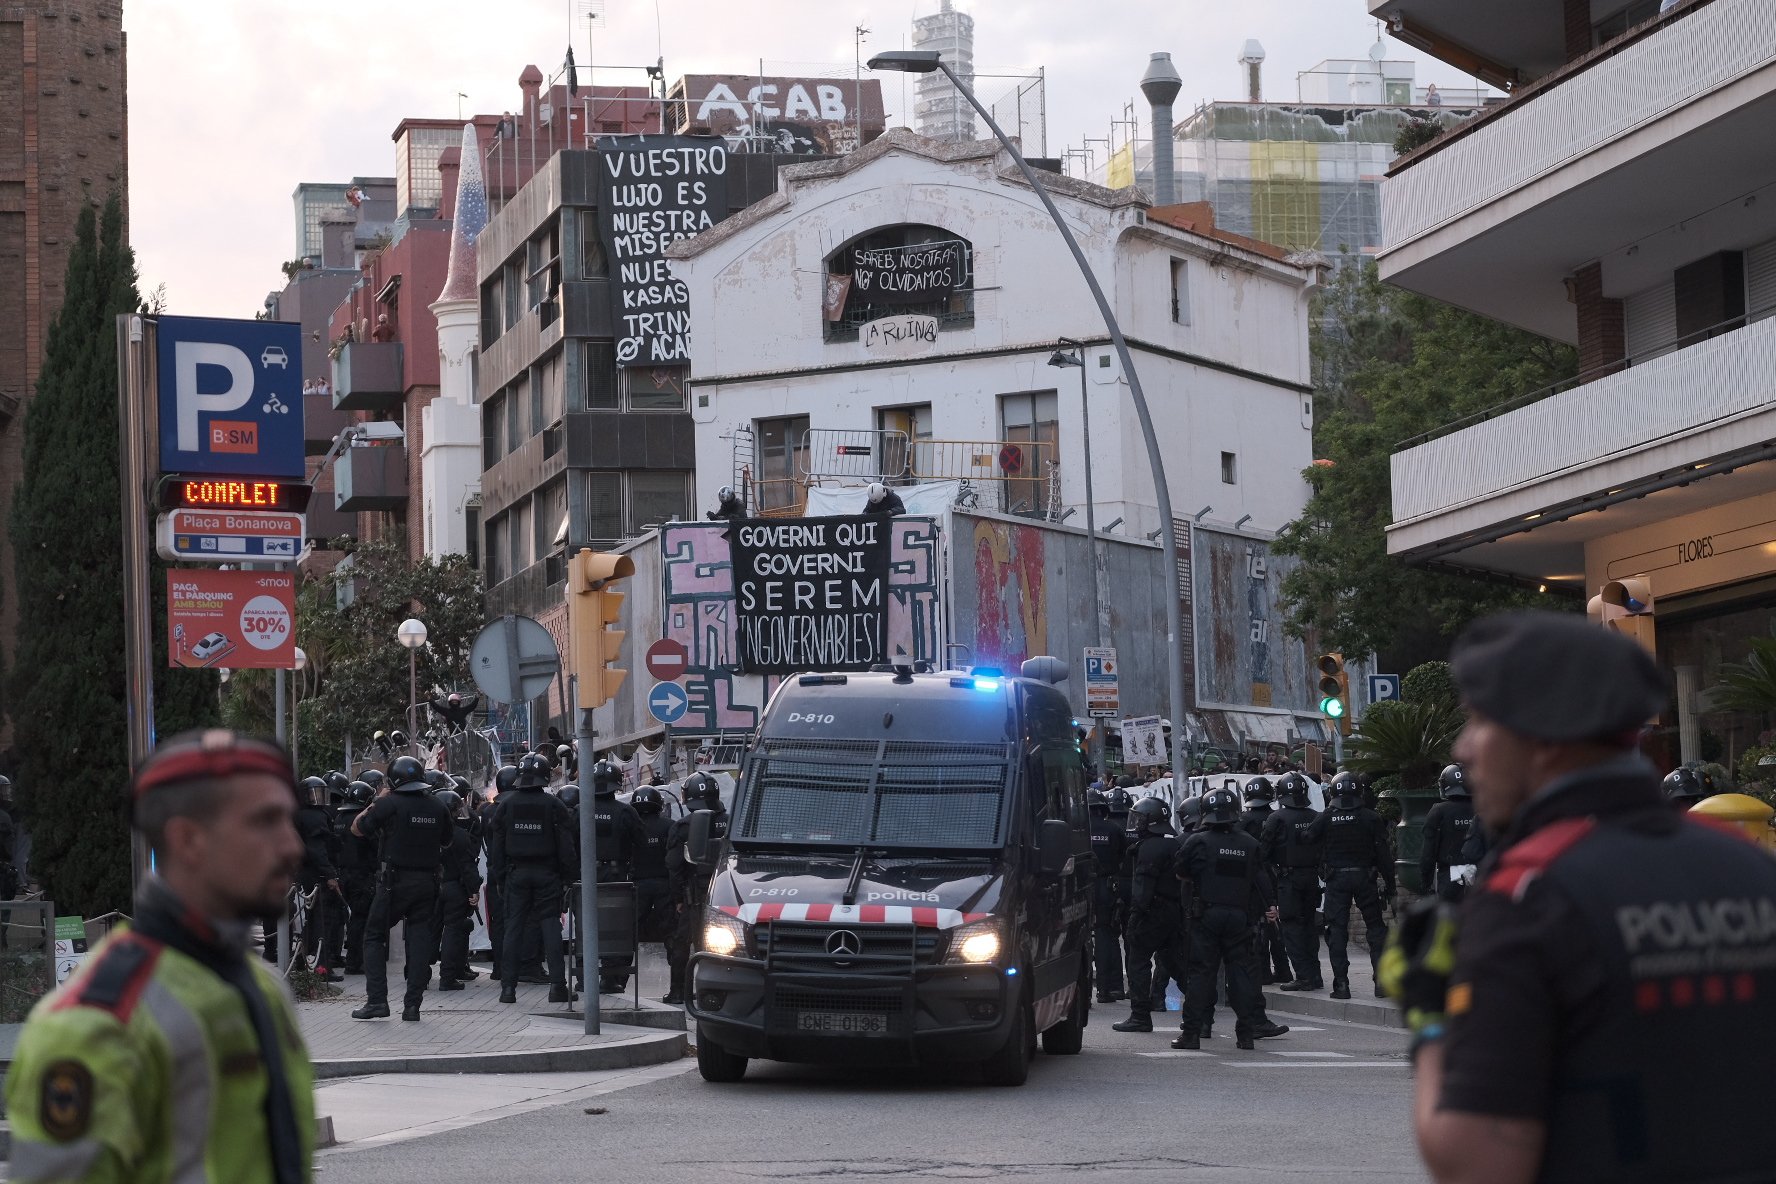 Nova tarda calenta a Barcelona: Desokupa i els prookupes se citen a 48 hores de les eleccions